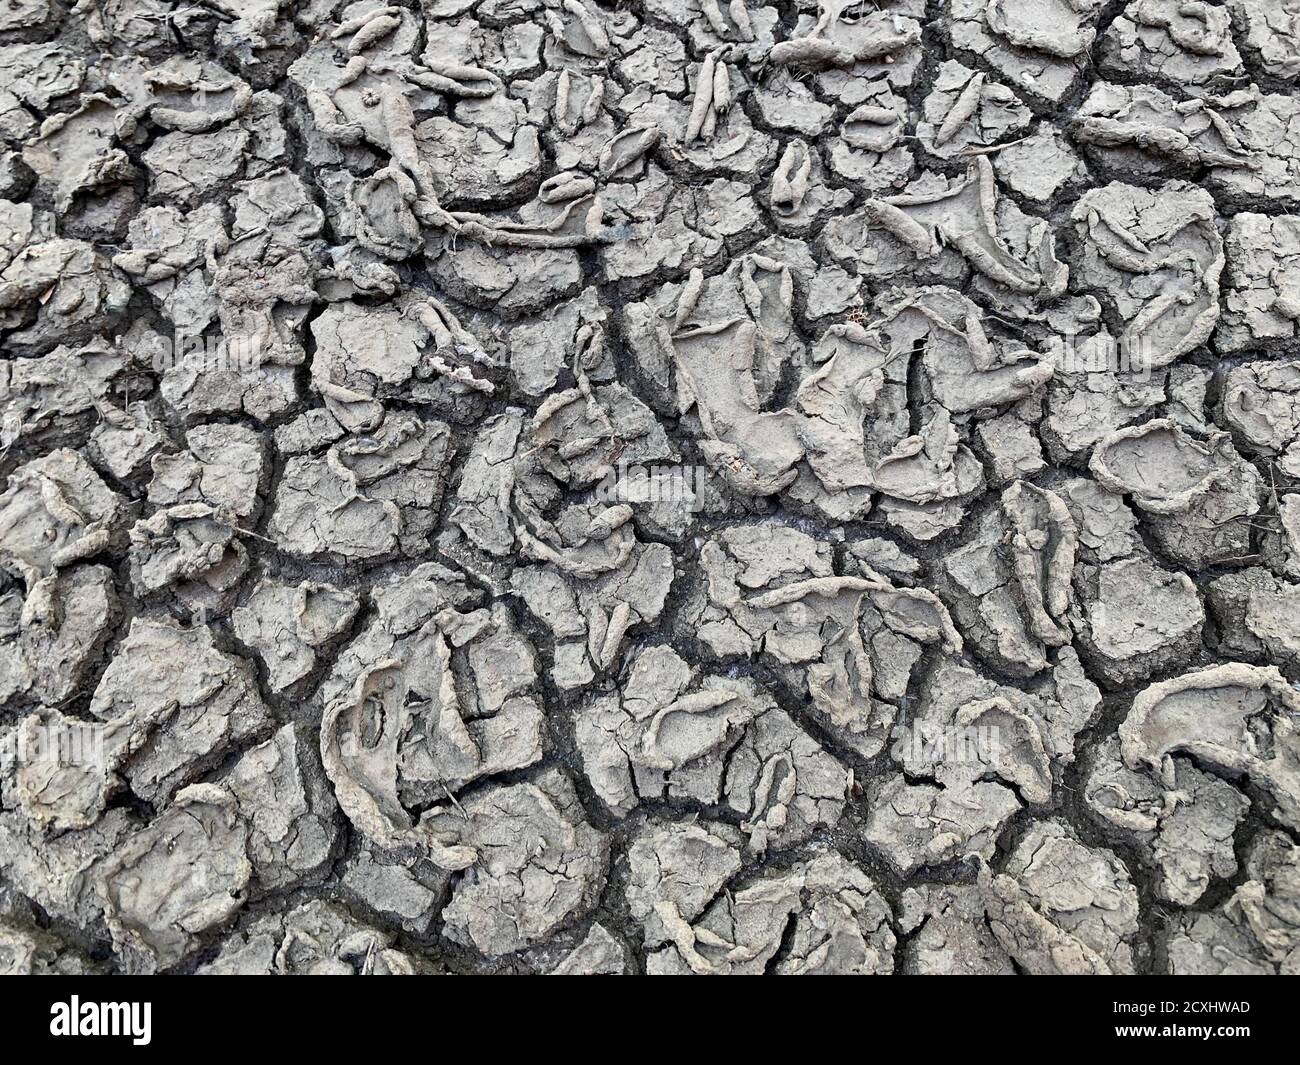 Gerissene Bodenstruktur. Trockene Erde. Wüstenboden Hintergrund. Ungewöhnliche Muster auf getrocknetem grauem Schlamm. Rissiger Boden während einer Dürre. Stockfoto